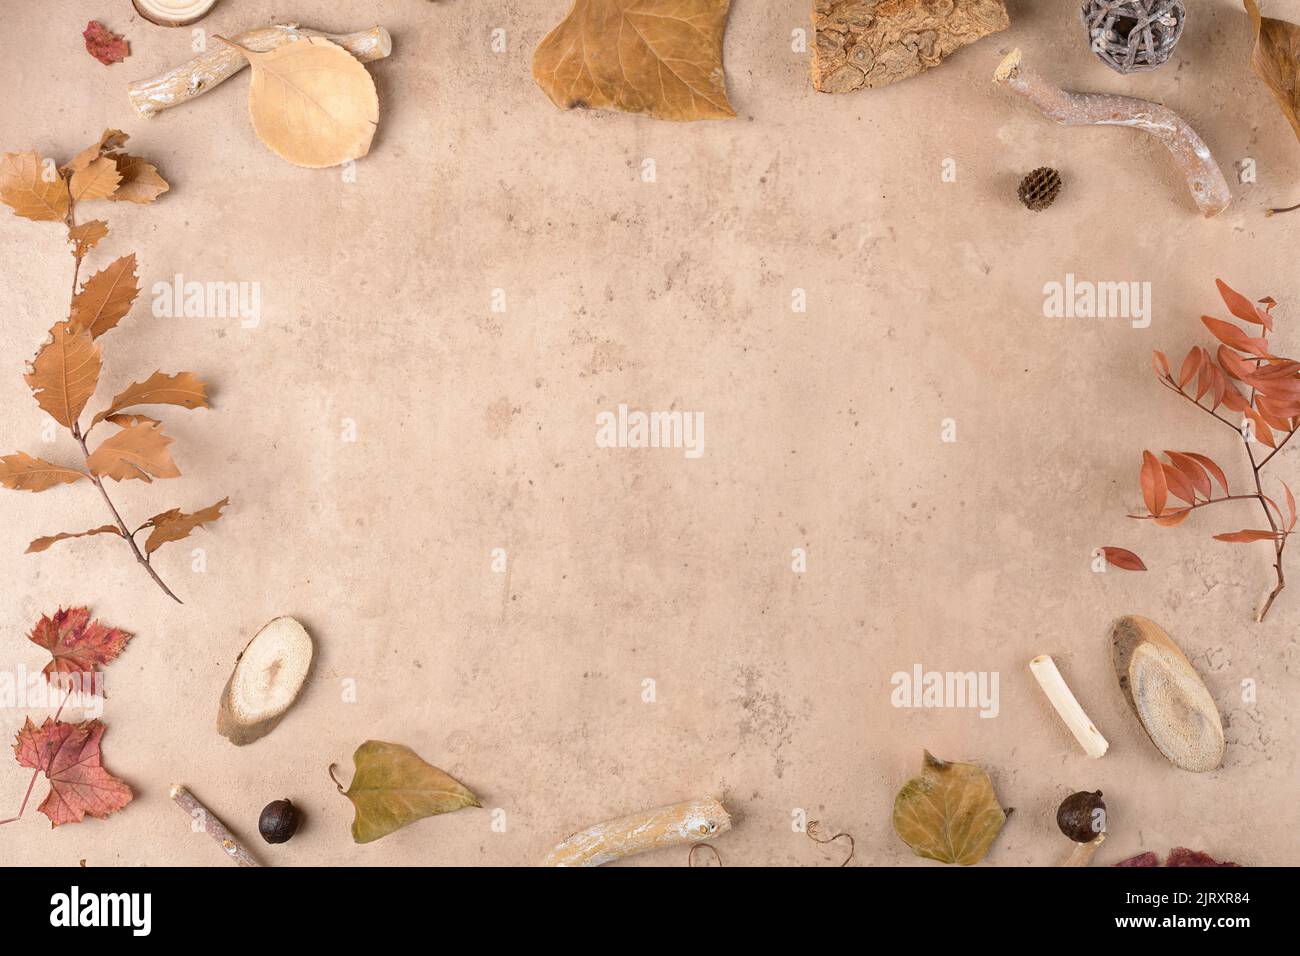 Rahmenrand aus trocken gefallenen Blättern auf dem modernen beg Terrakotta-Stein Hintergrund. Thanksgiving herbstlicher Hintergrund, Draufsicht, flaches Lay Stockfoto